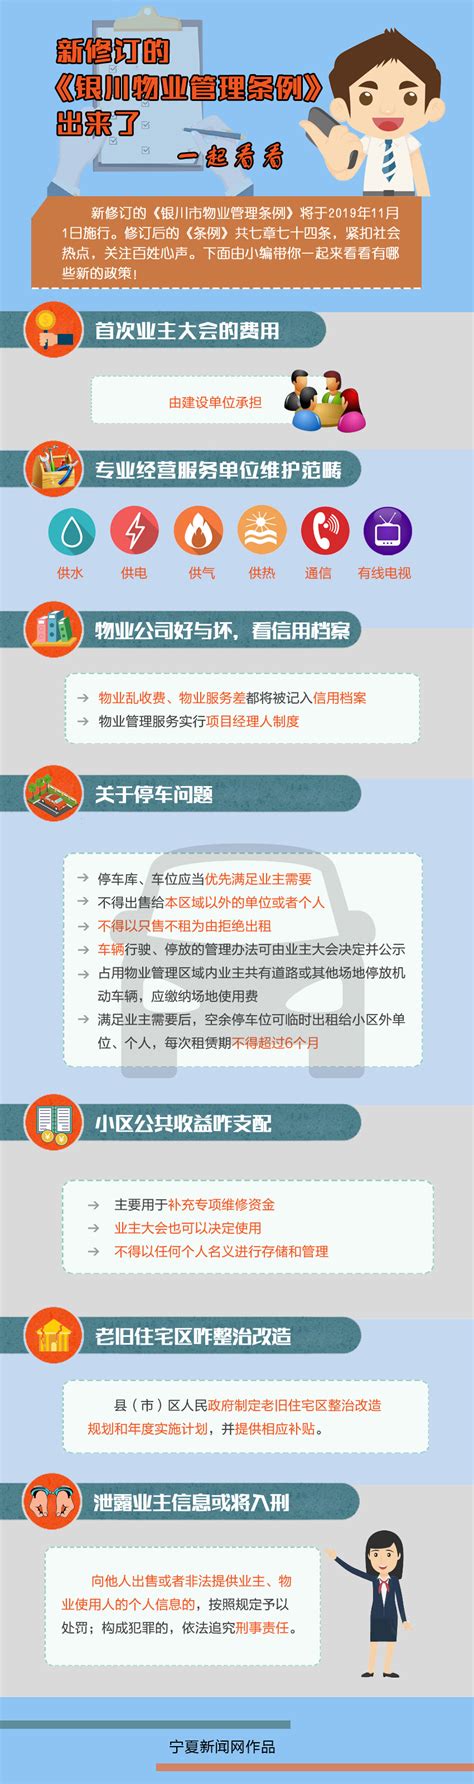 一图读懂新修订的《银川市物业管理条例》-宁夏新闻网